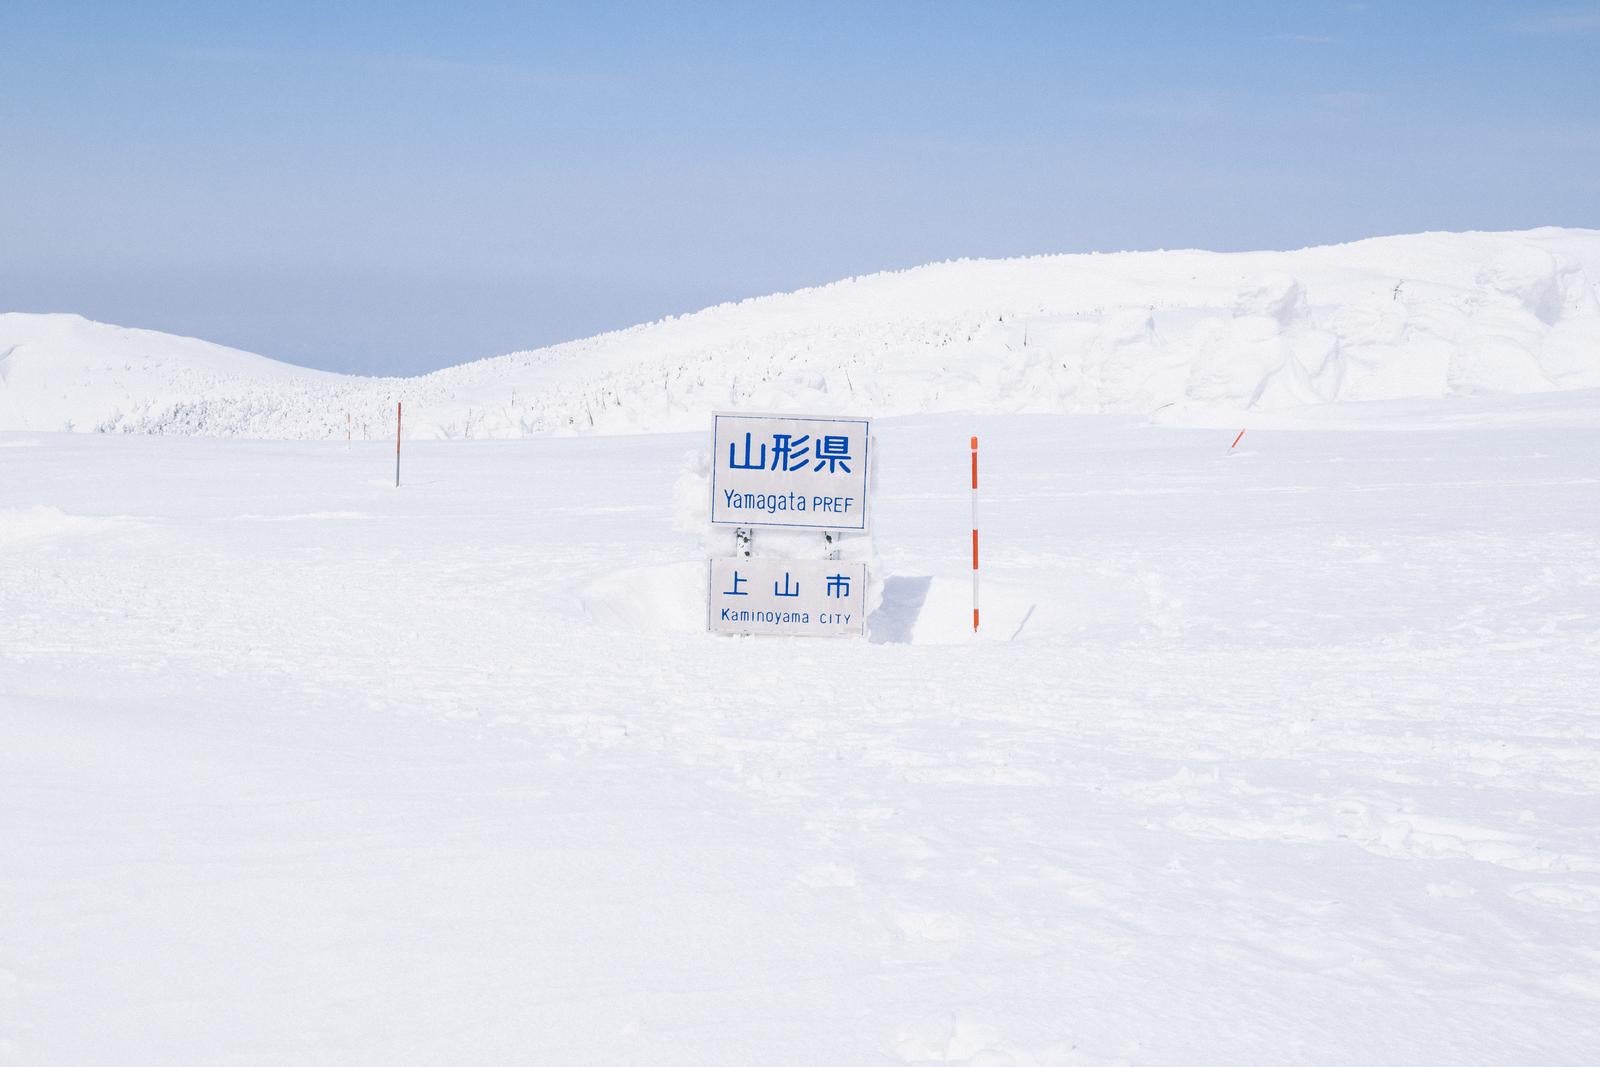 「雪に覆われた山形県県境の看板」の写真